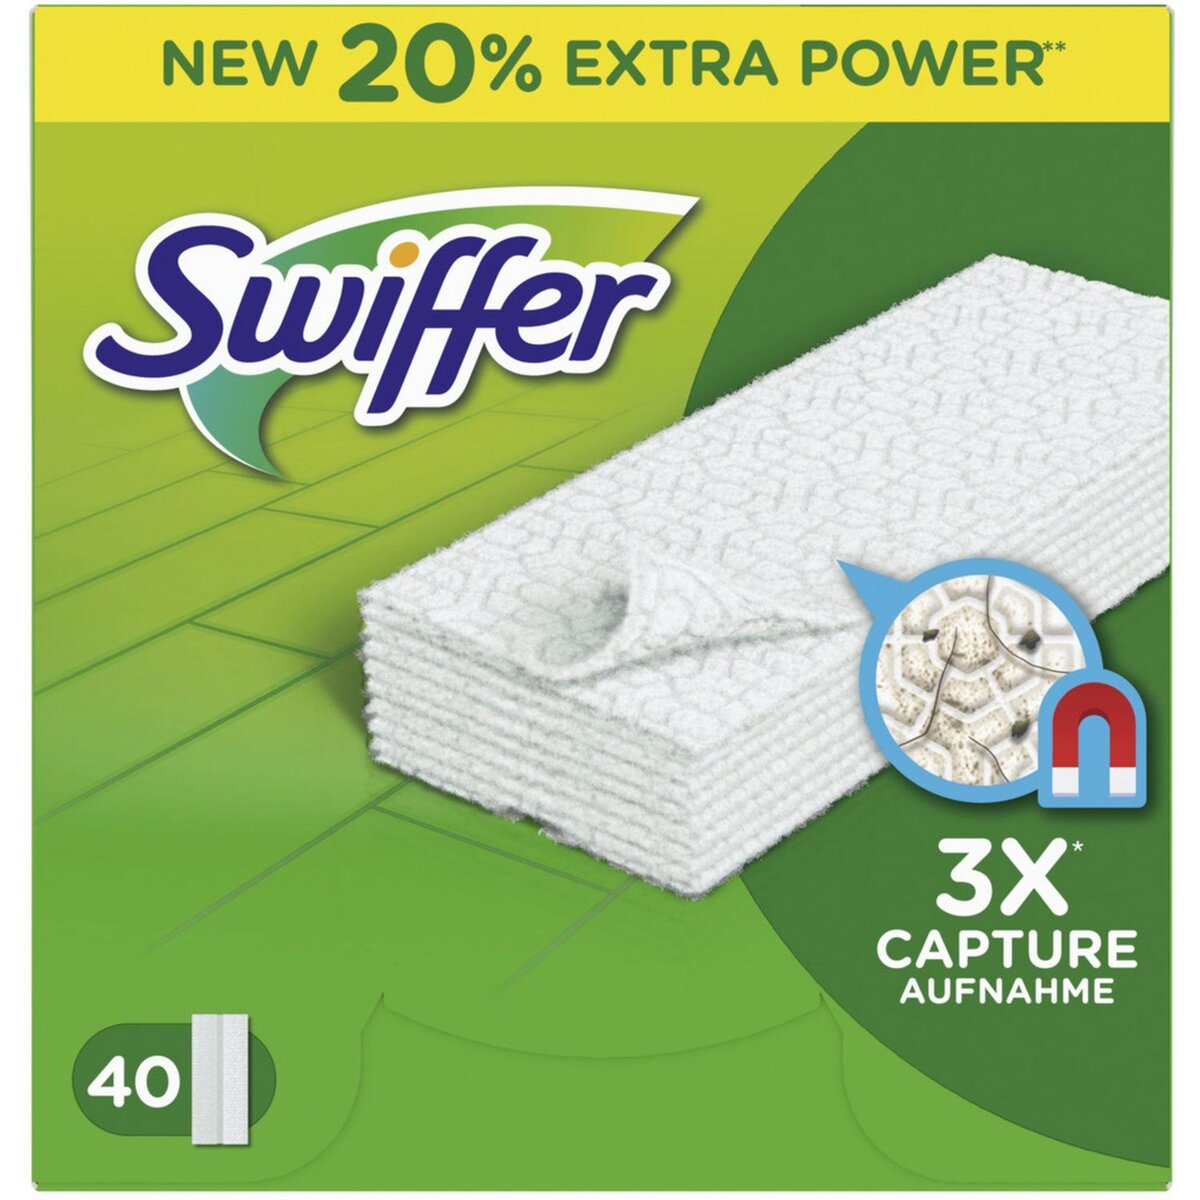 Promo Swiffer attrape-poussière balai kit wejet chez Auchan